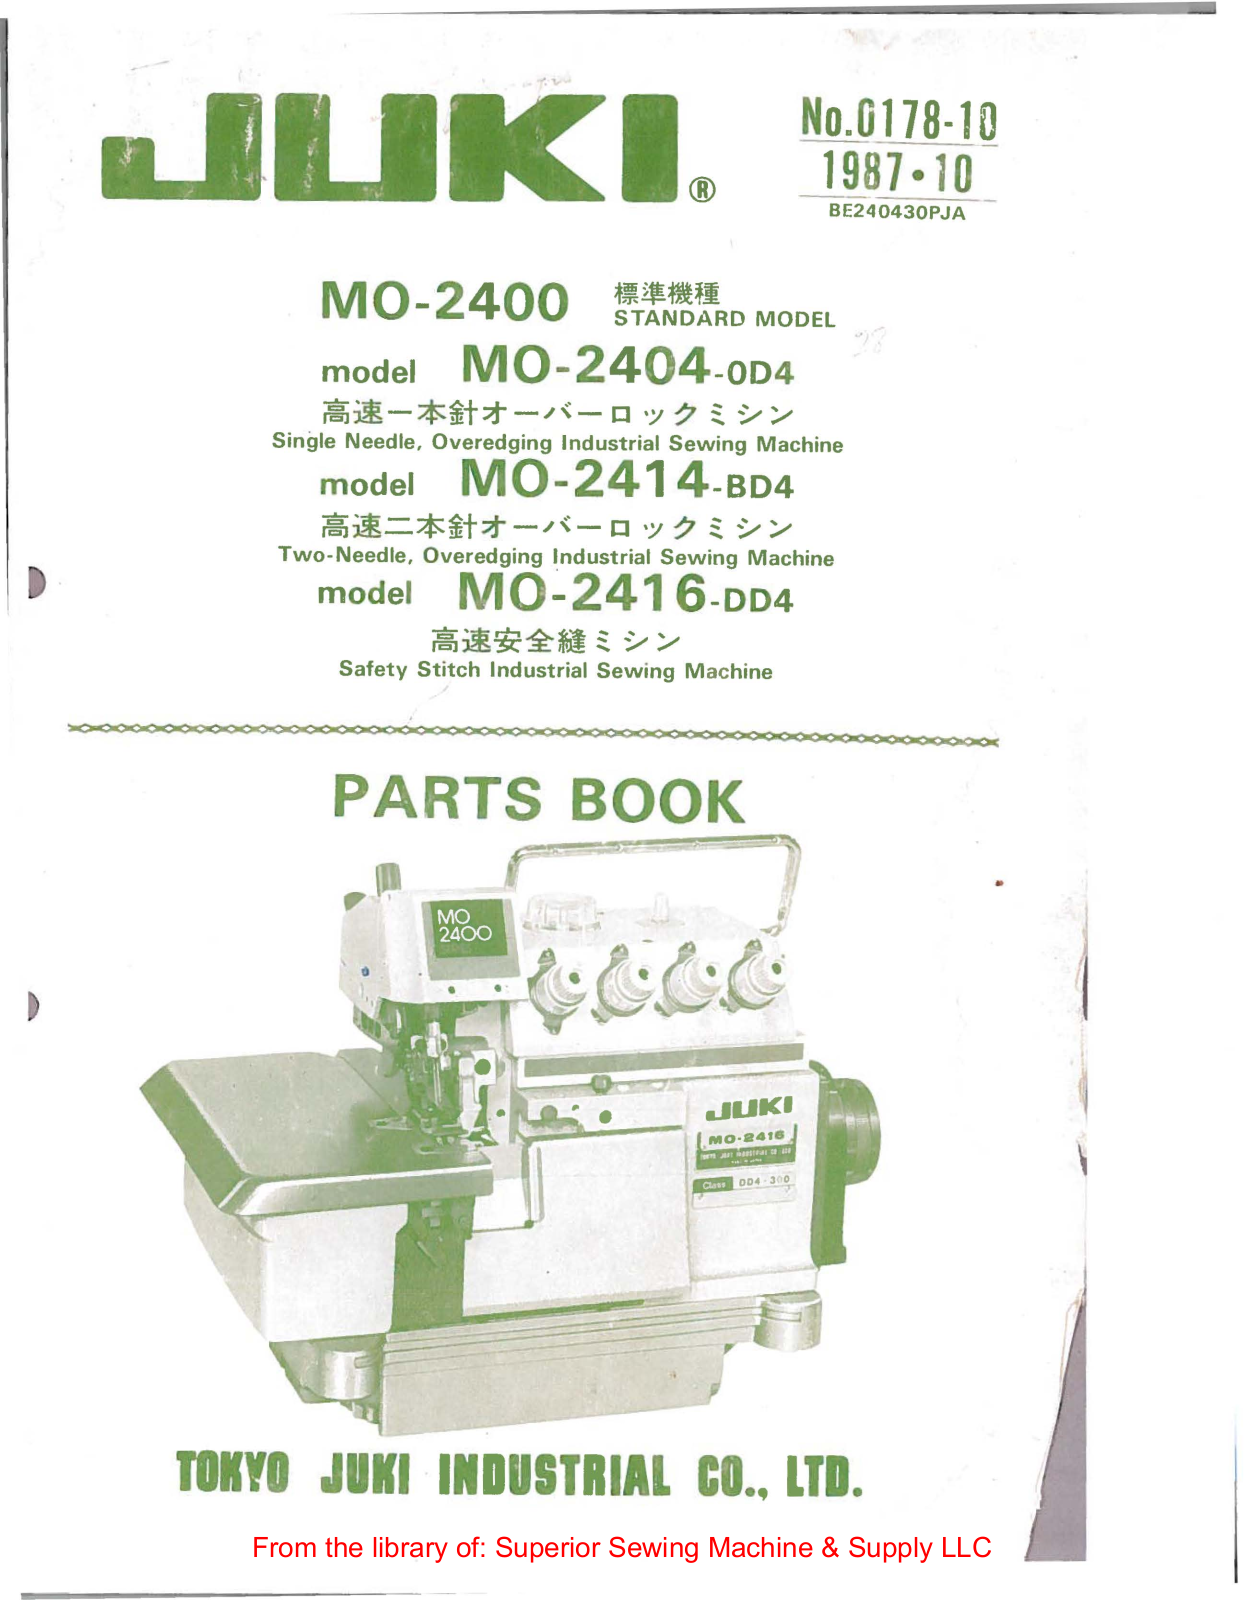 Juki MO-2404-0D4, MO-2414-BD4, MO-2416-DD4 Manual